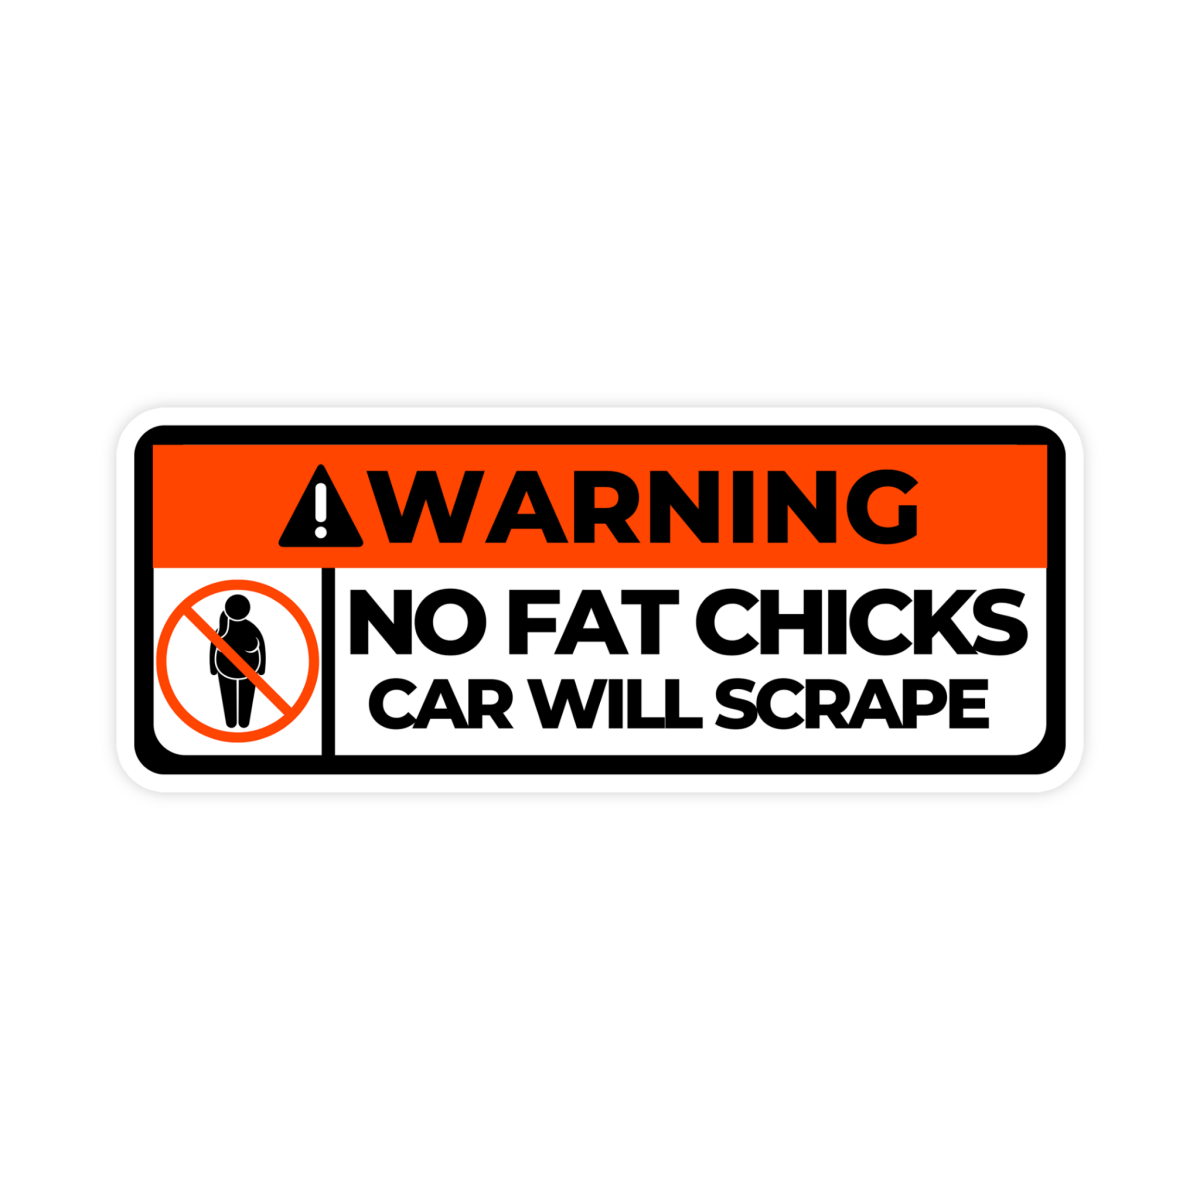 Warning No Fat Chicks Car Will Scrape Bumper Sticker - stickerbullWarning No Fat Chicks Car Will Scrape Bumper StickerRetail StickerstickerbullstickerbullTaylor_FatChicks [#237]Warning No Fat Chicks Car Will Scrape Bumper Sticker